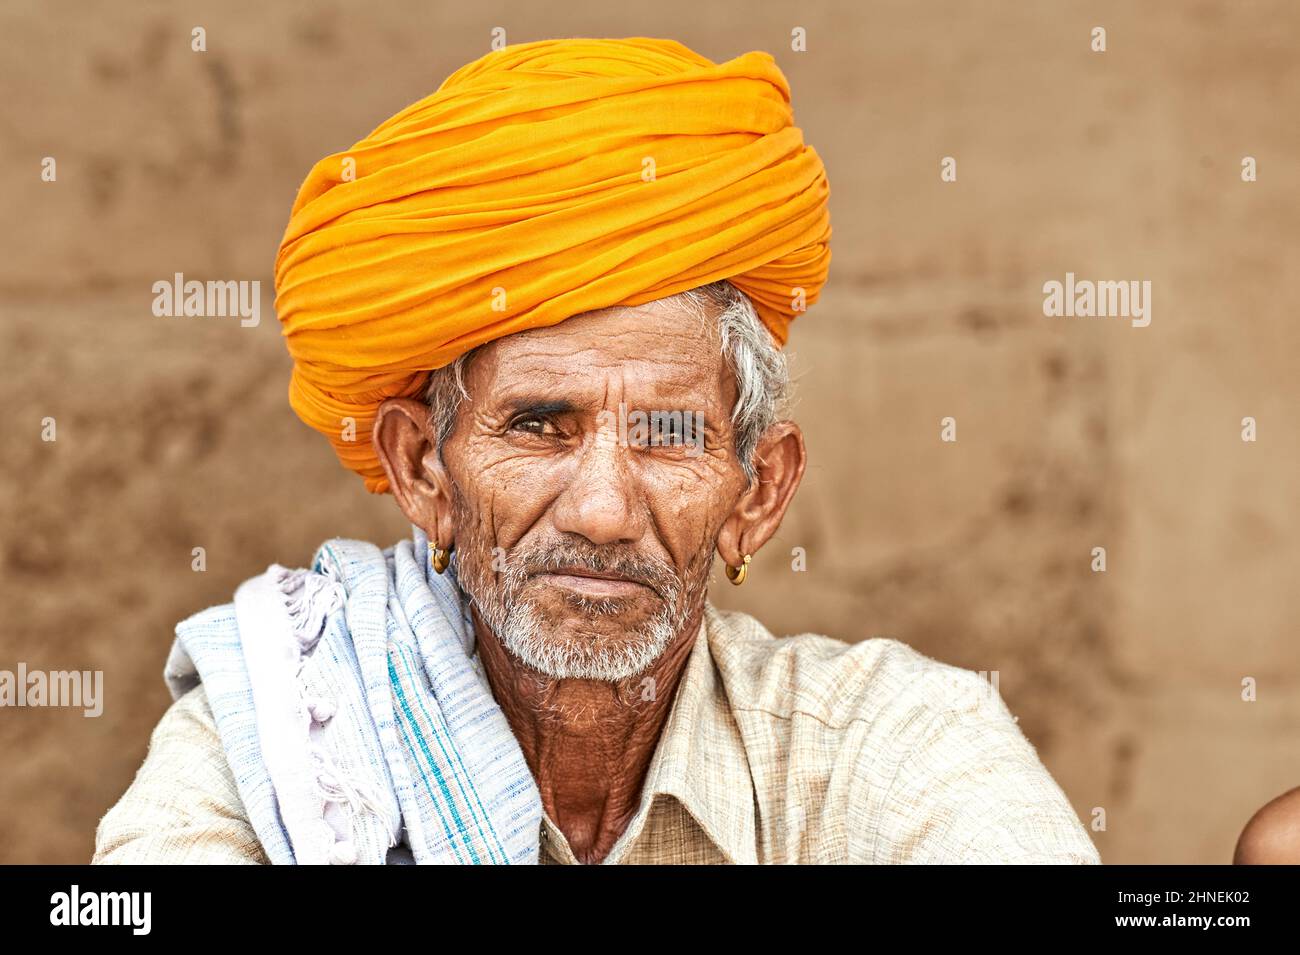 Inde Rajasthan Jodhpur. Portrait d'un vieil homme au turban jaune Banque D'Images